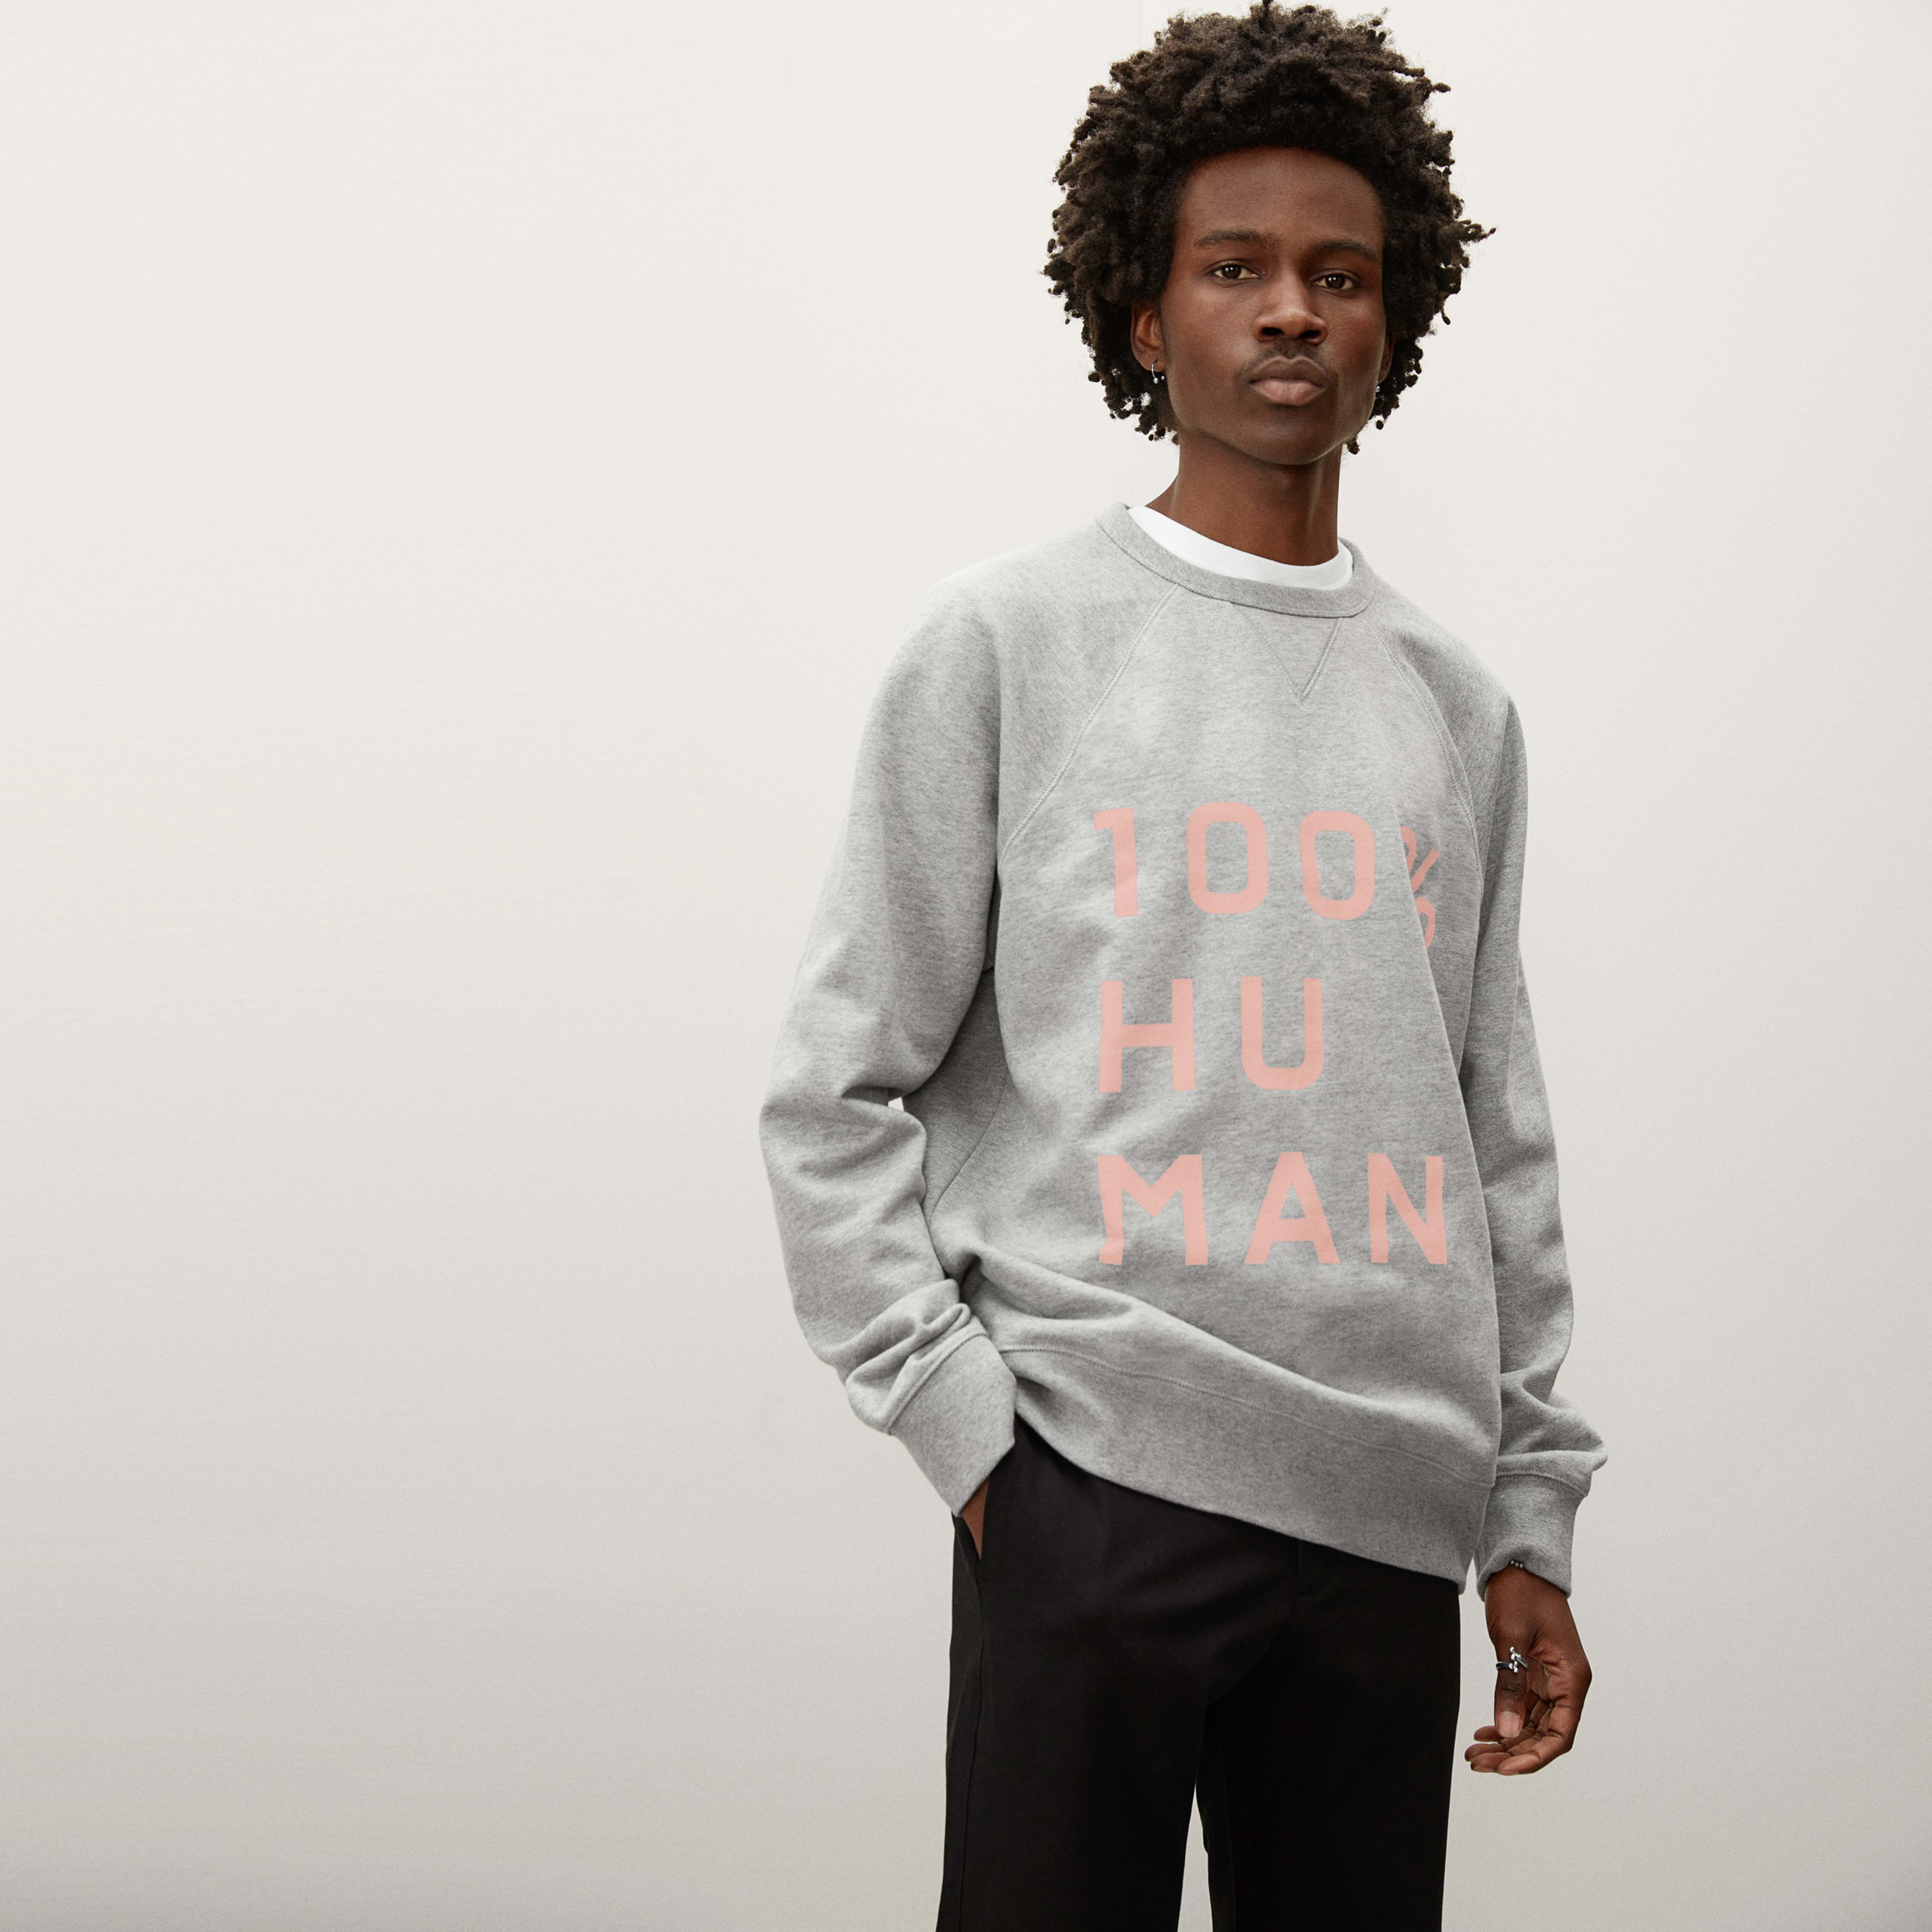 The 100% Human Typography Sweatshirt Heather Grey / Pink – Everlane